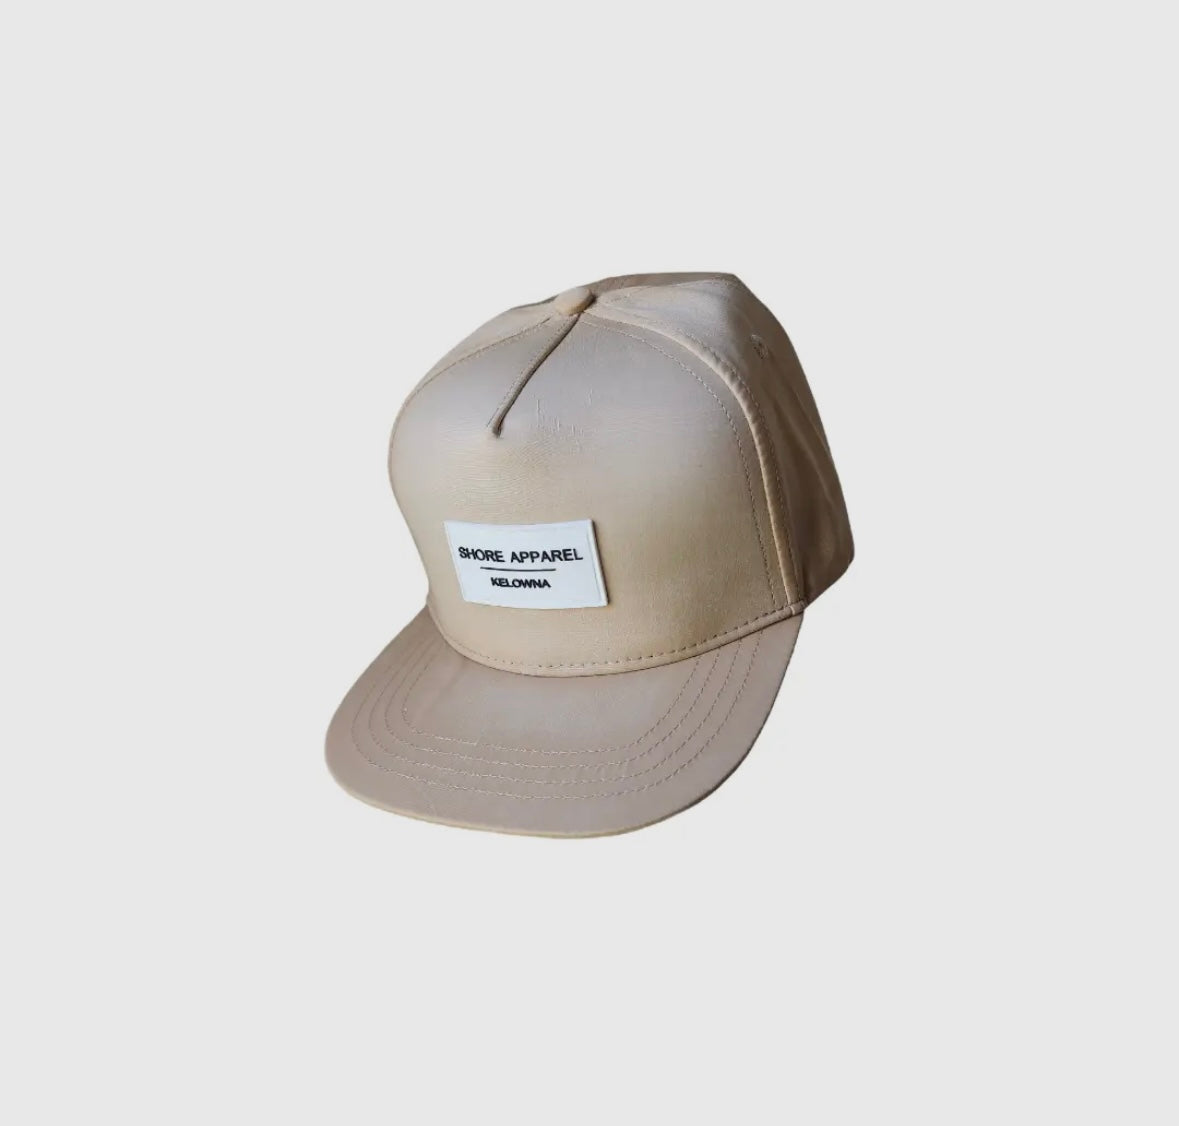 Shore apparel sandbar hat (kid)